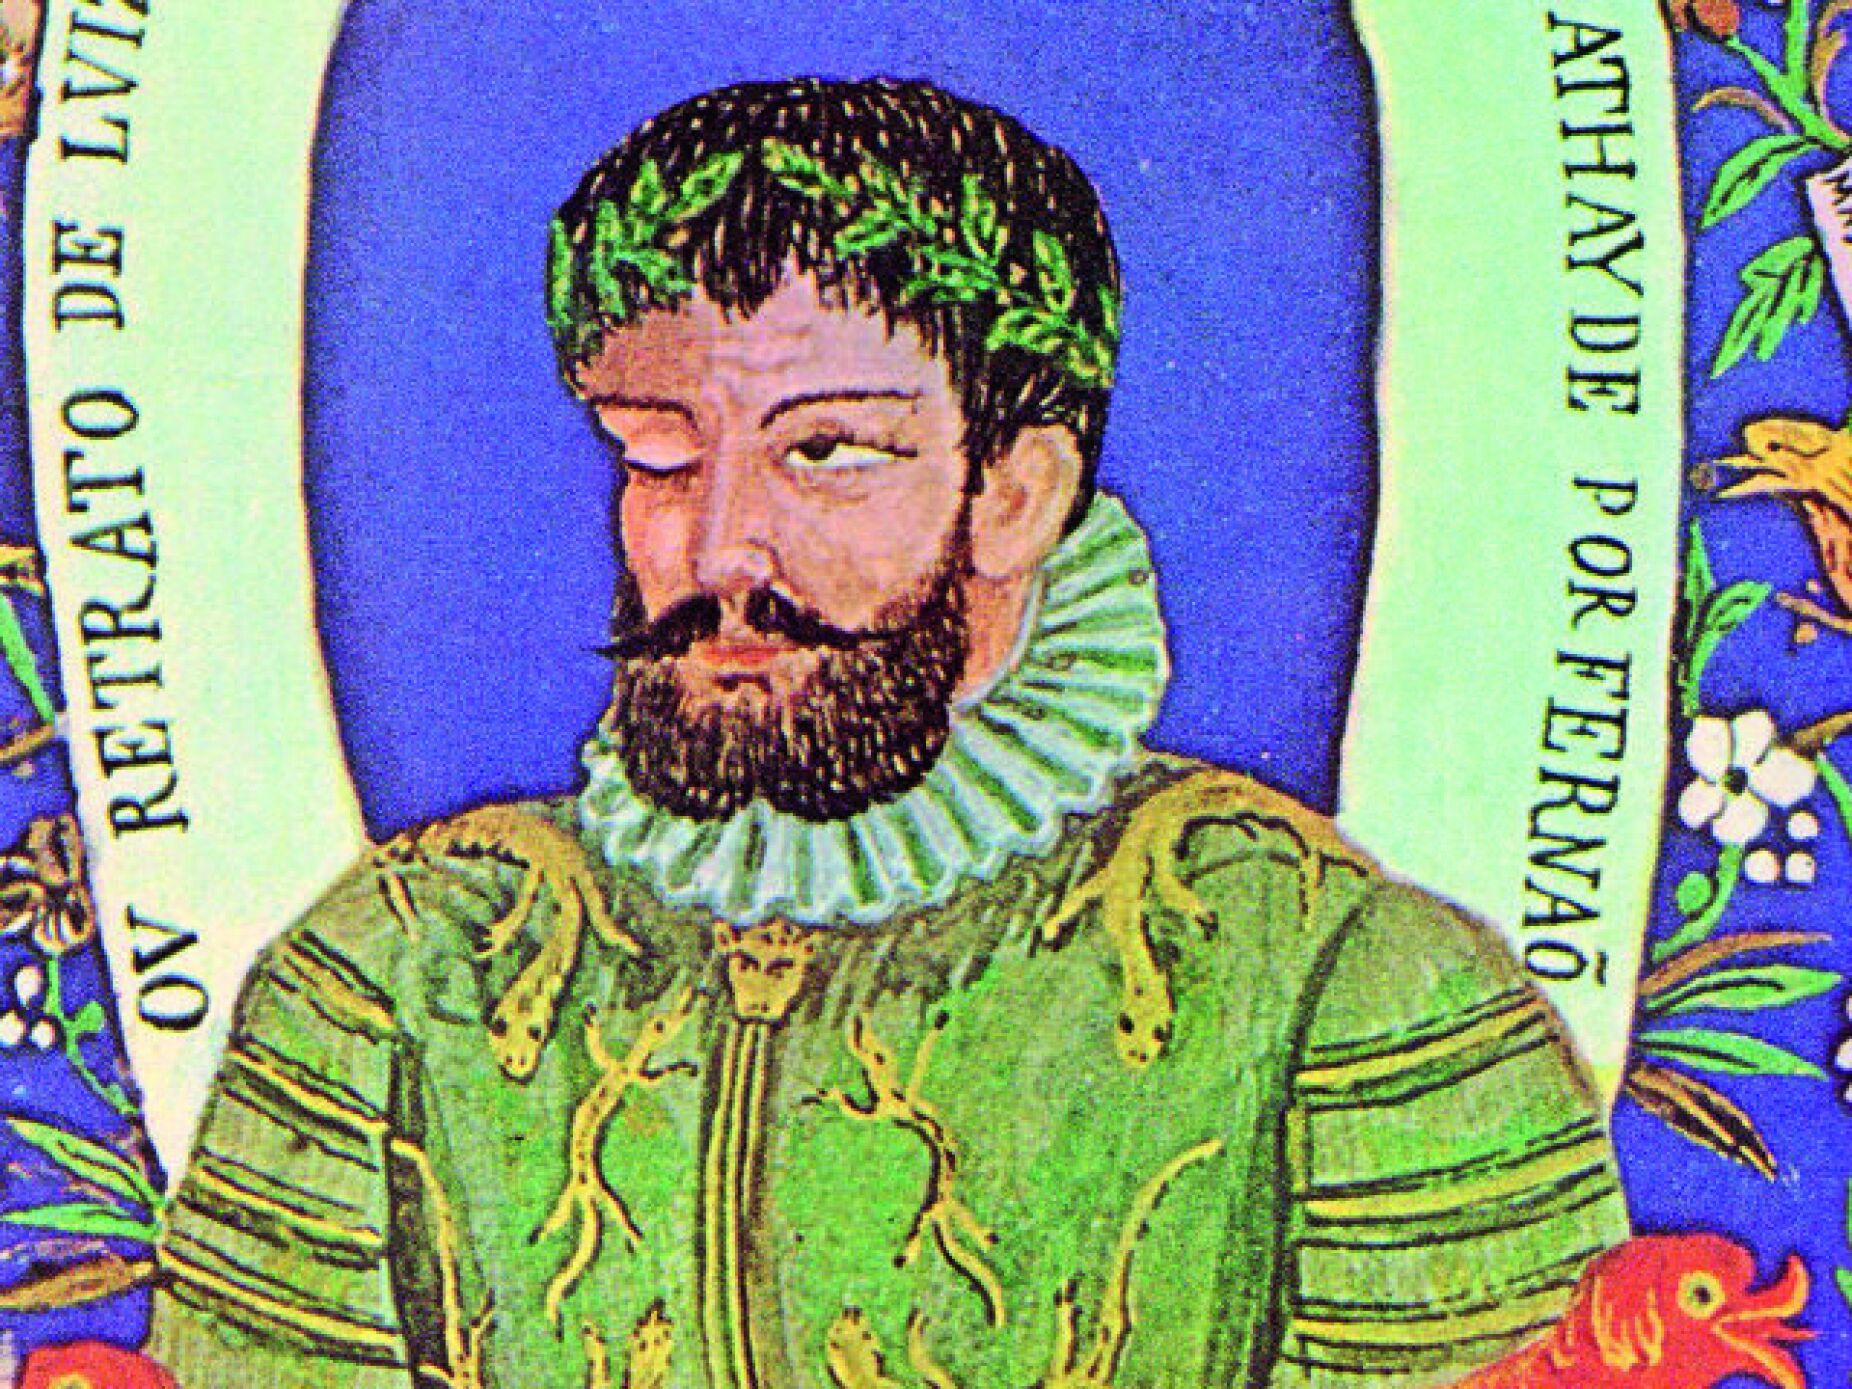 Frederico Lourenço regressa ao “prodigioso bestseller de 1572” em Portugal